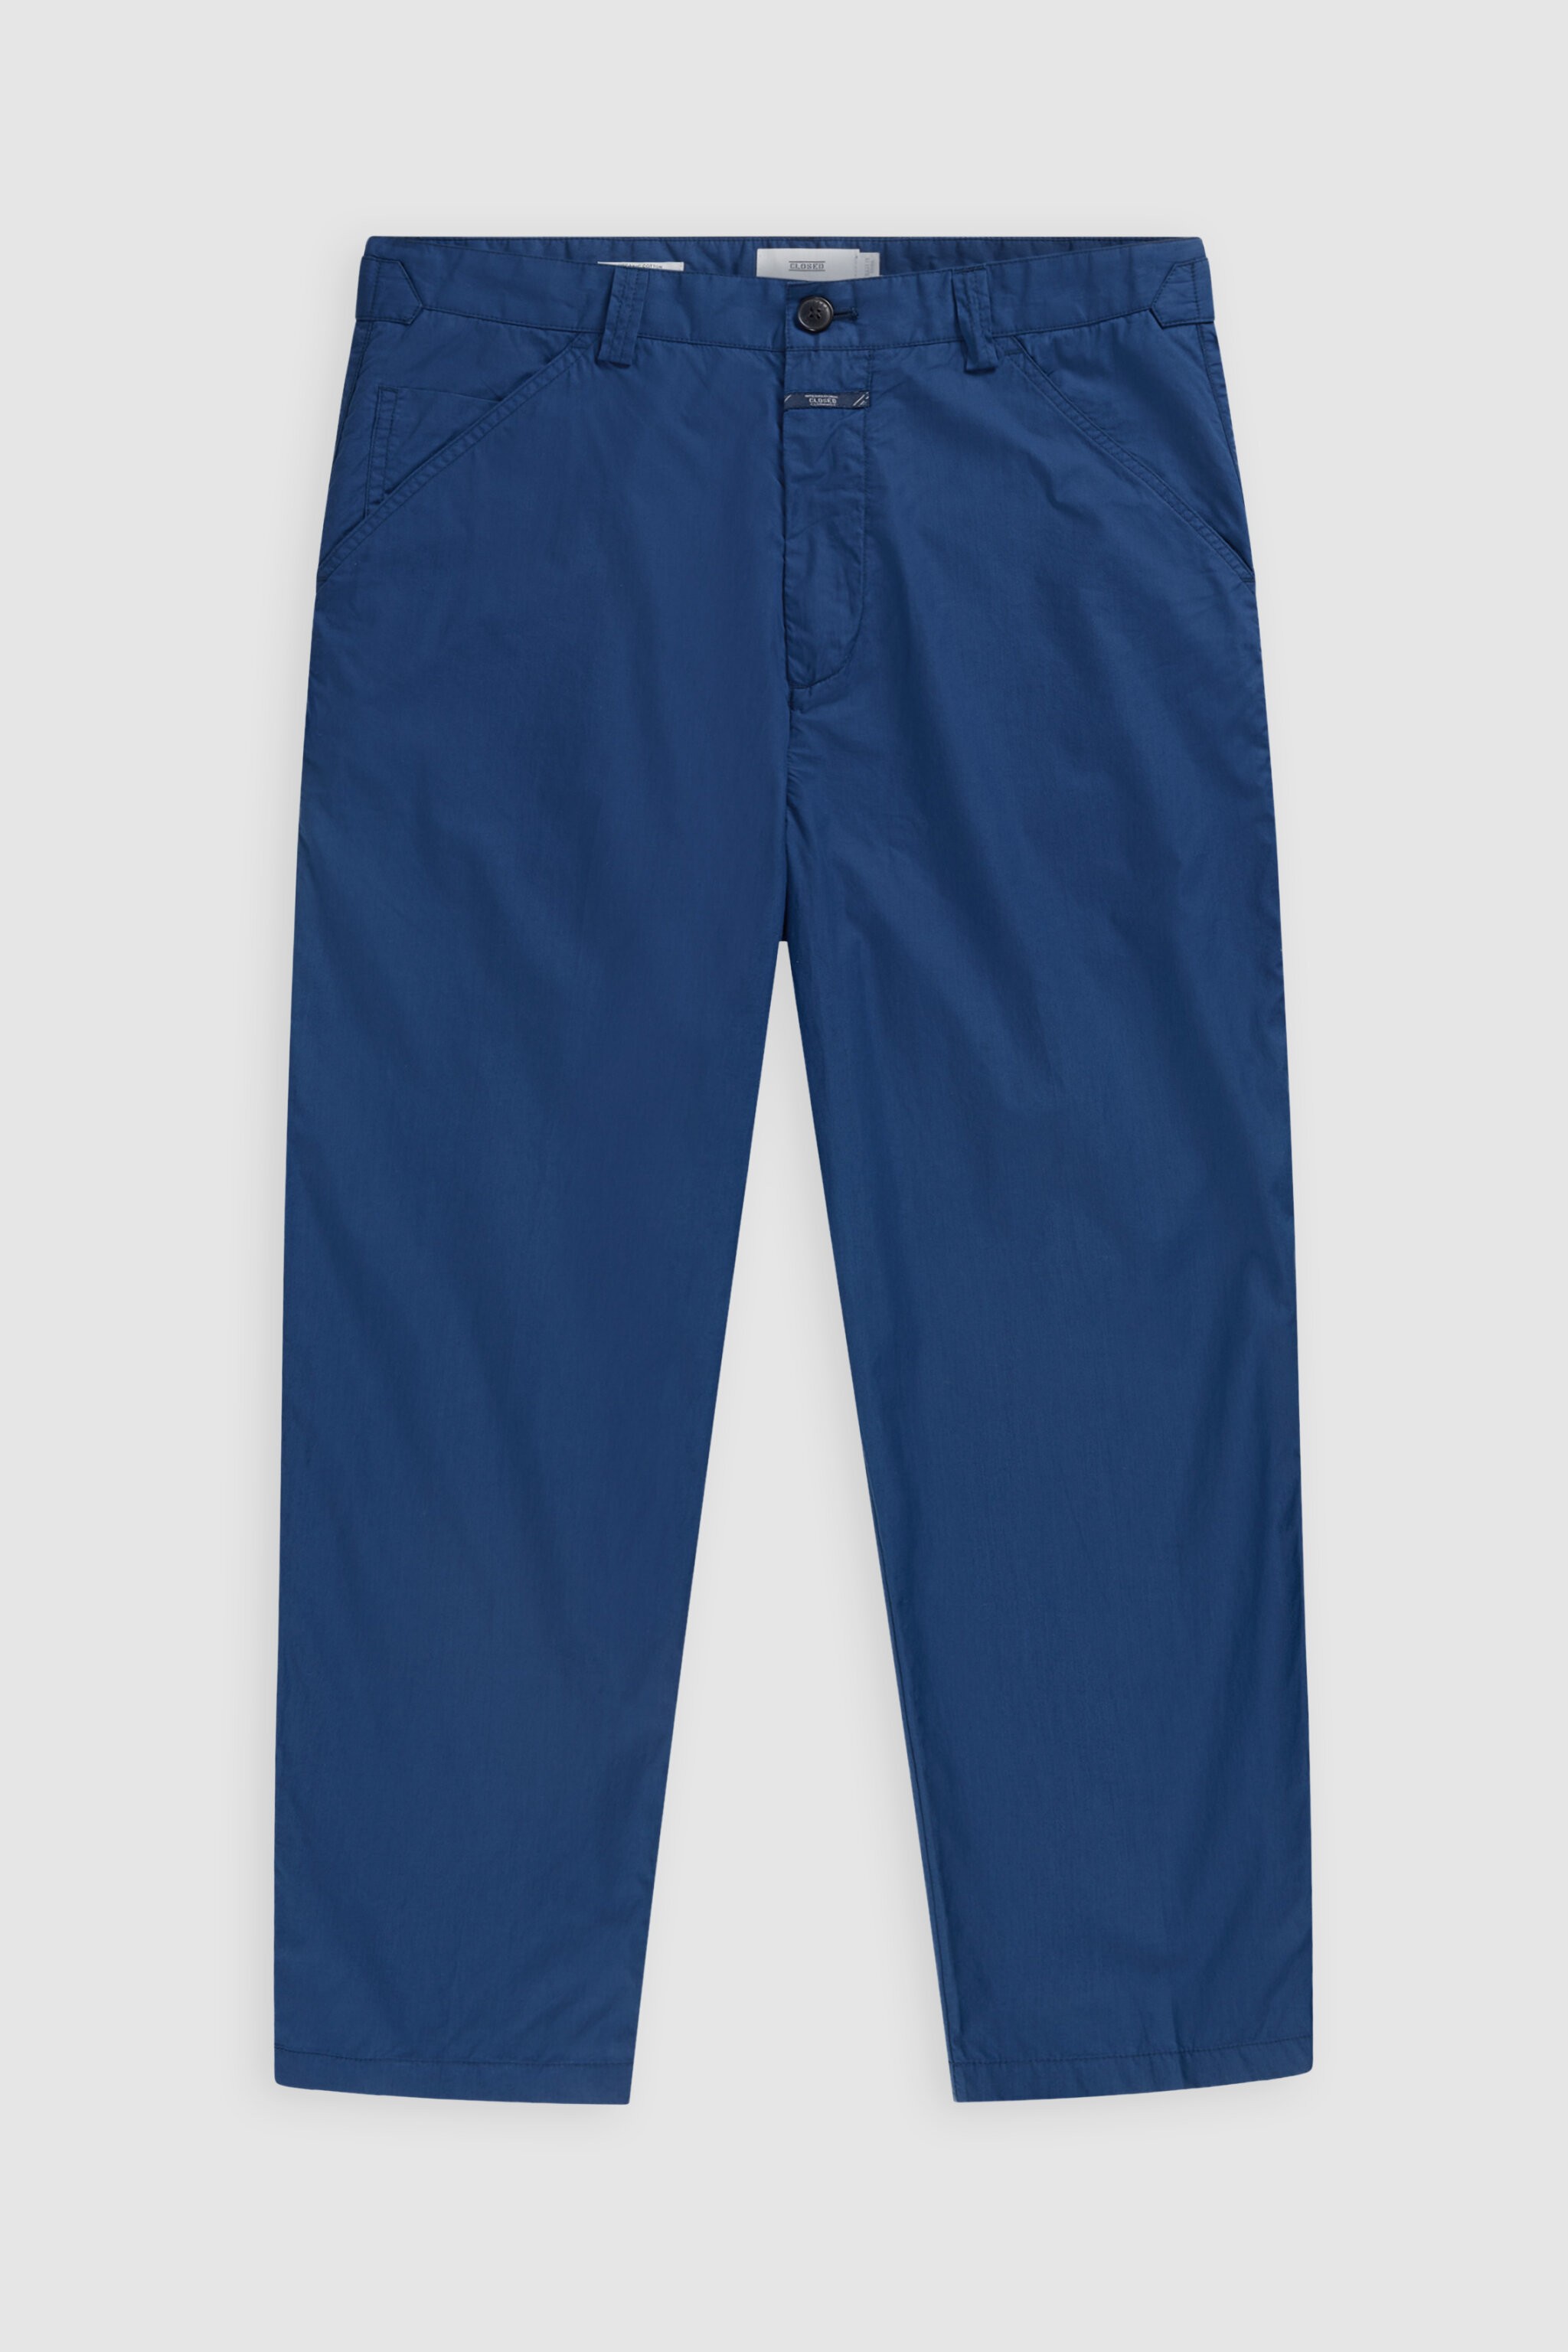 closed-pantalon-dover-popeline-coton-bio-relaxed-bleu-indigo